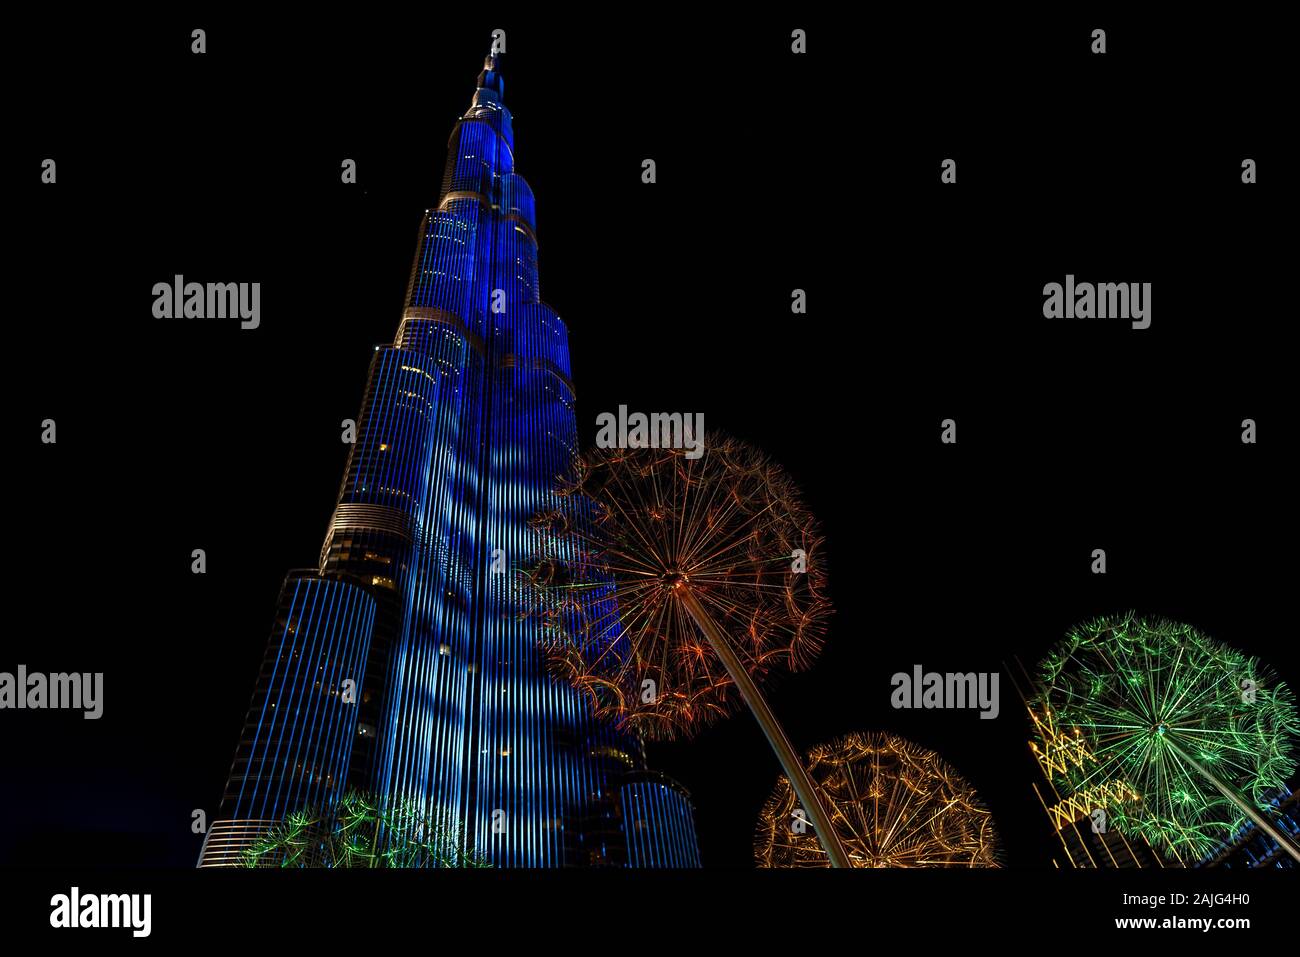 Dubai, Vereinigte Arabische Emirate: futuristische Licht Show am Burj Dubai, dem höchsten Gebäude Wolkenkratzer der Welt, bei Nacht, beleuchtet, vom Boden aus Stockfoto